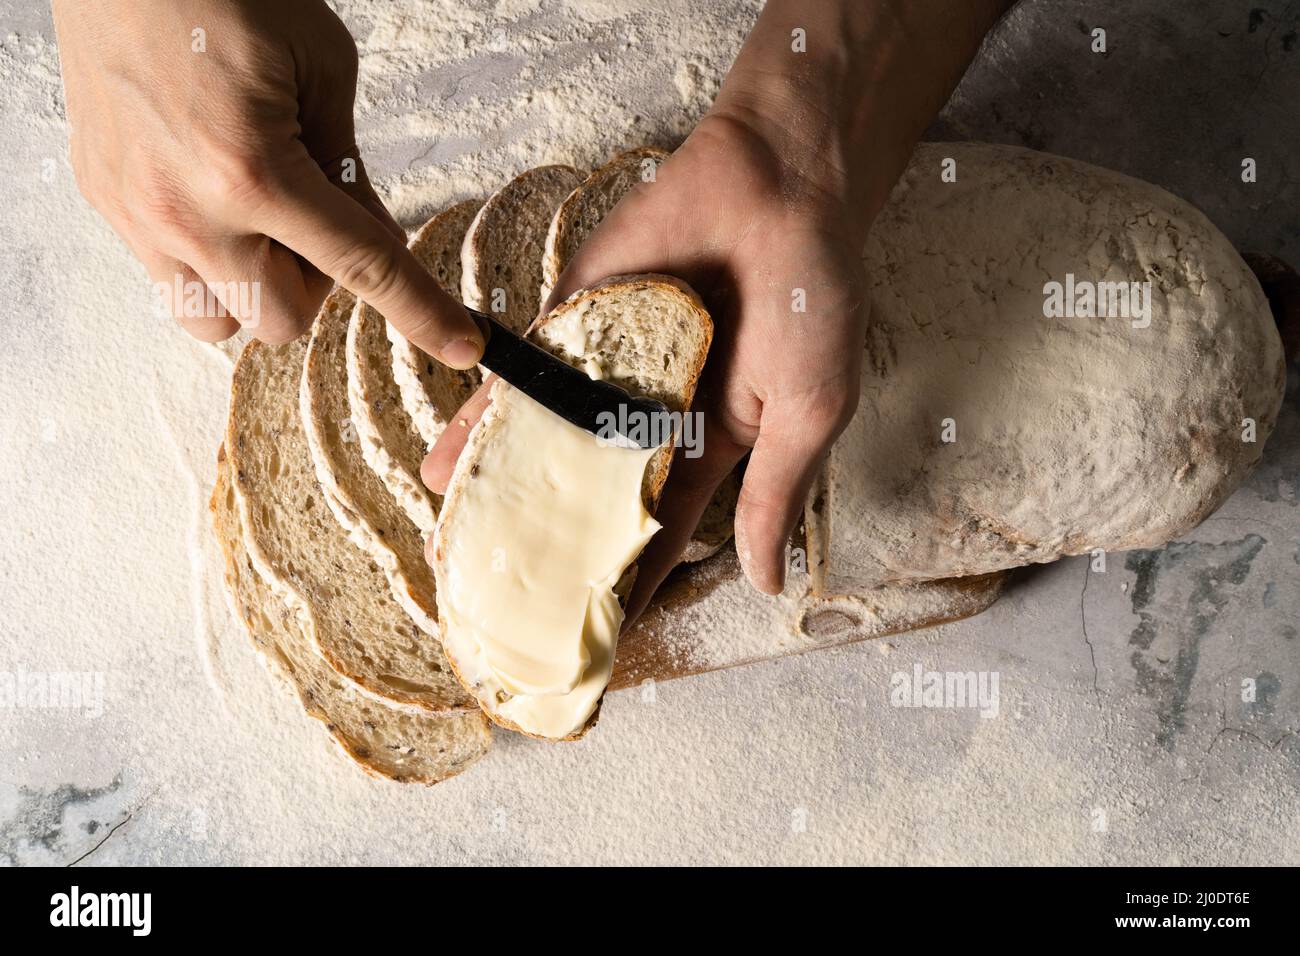 Uomo spalmando burro di formaggio cremoso o una fetta di pane su tavola di legno. Pane da dieta. Primo piano. Concetto di nutrizione sana. Foto Stock